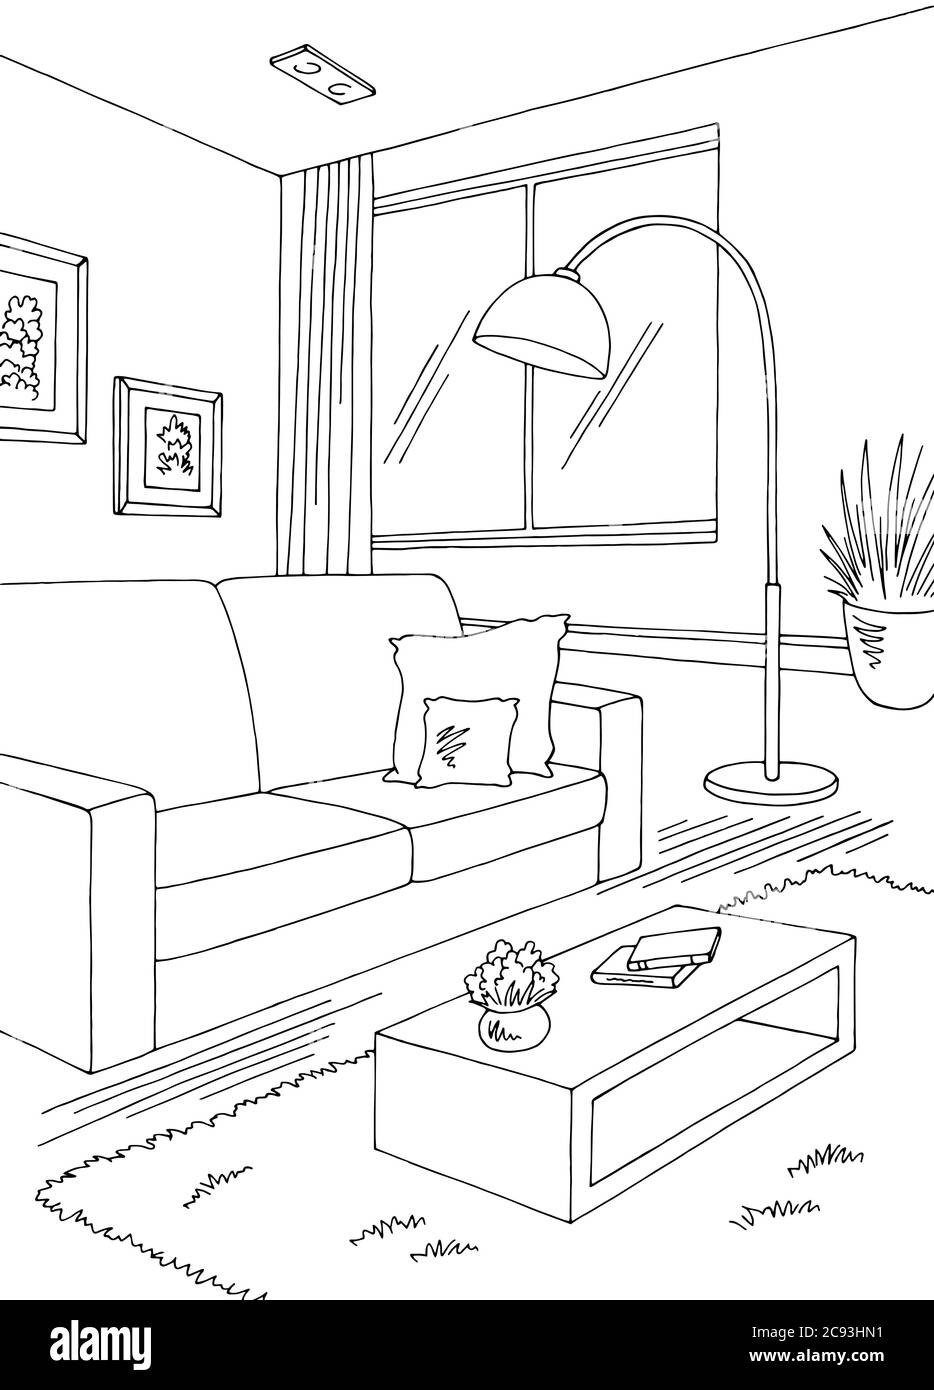 Wohnzimmer Grafik schwarz weiß Haus Interieur vertikale Skizze Illustration Vektor Stock Vektor